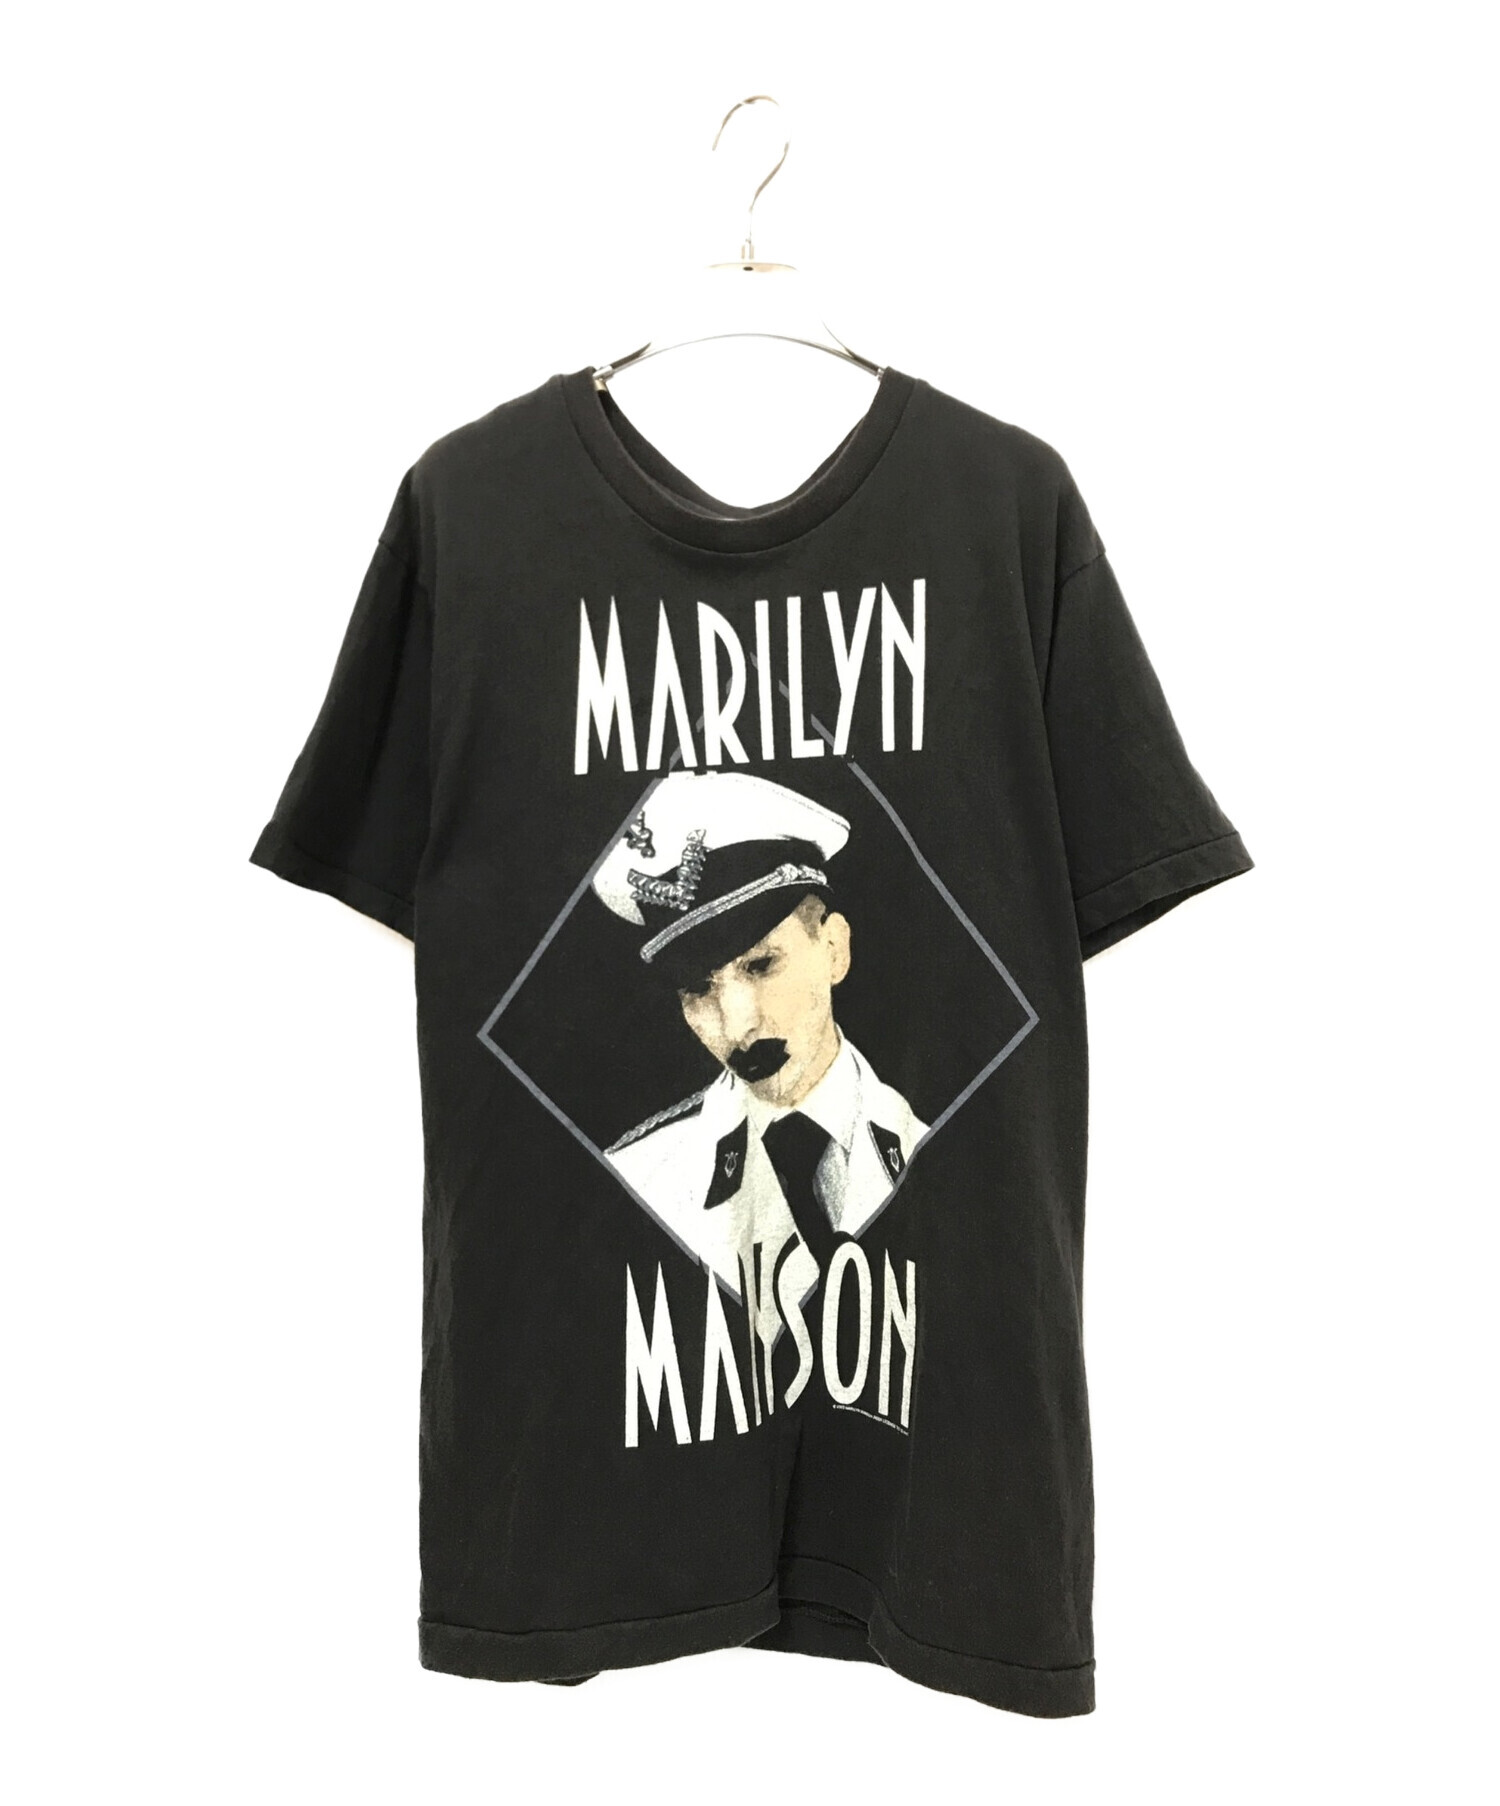 激レア90'S Marilyn Manson Tシャツ ヴィンテージ　サイズL